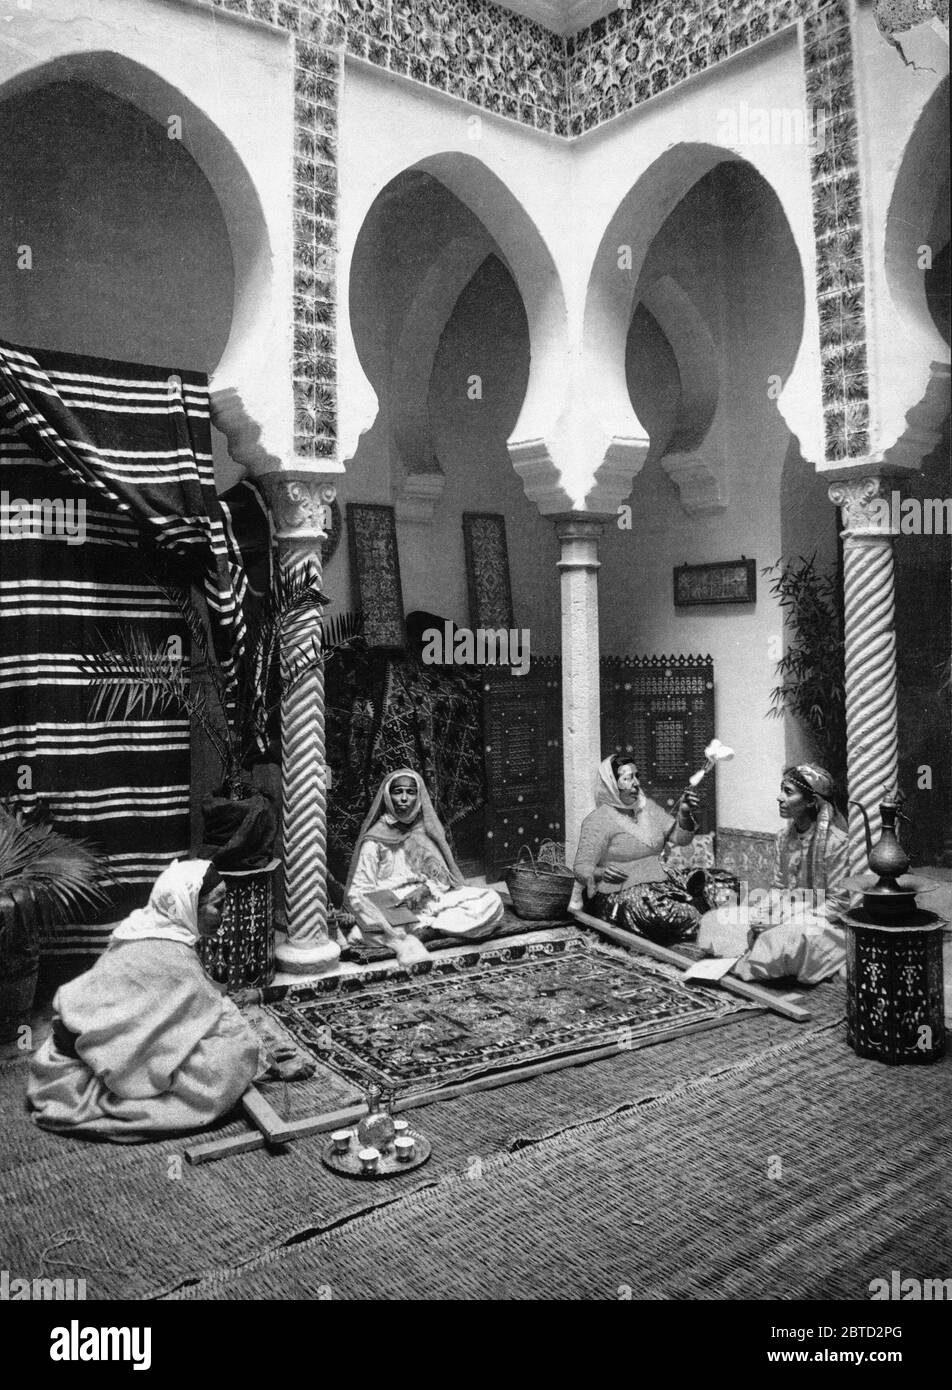 Les femmes maures faire tapis Arabe, Alger, Algérie ca. 1899 Banque D'Images